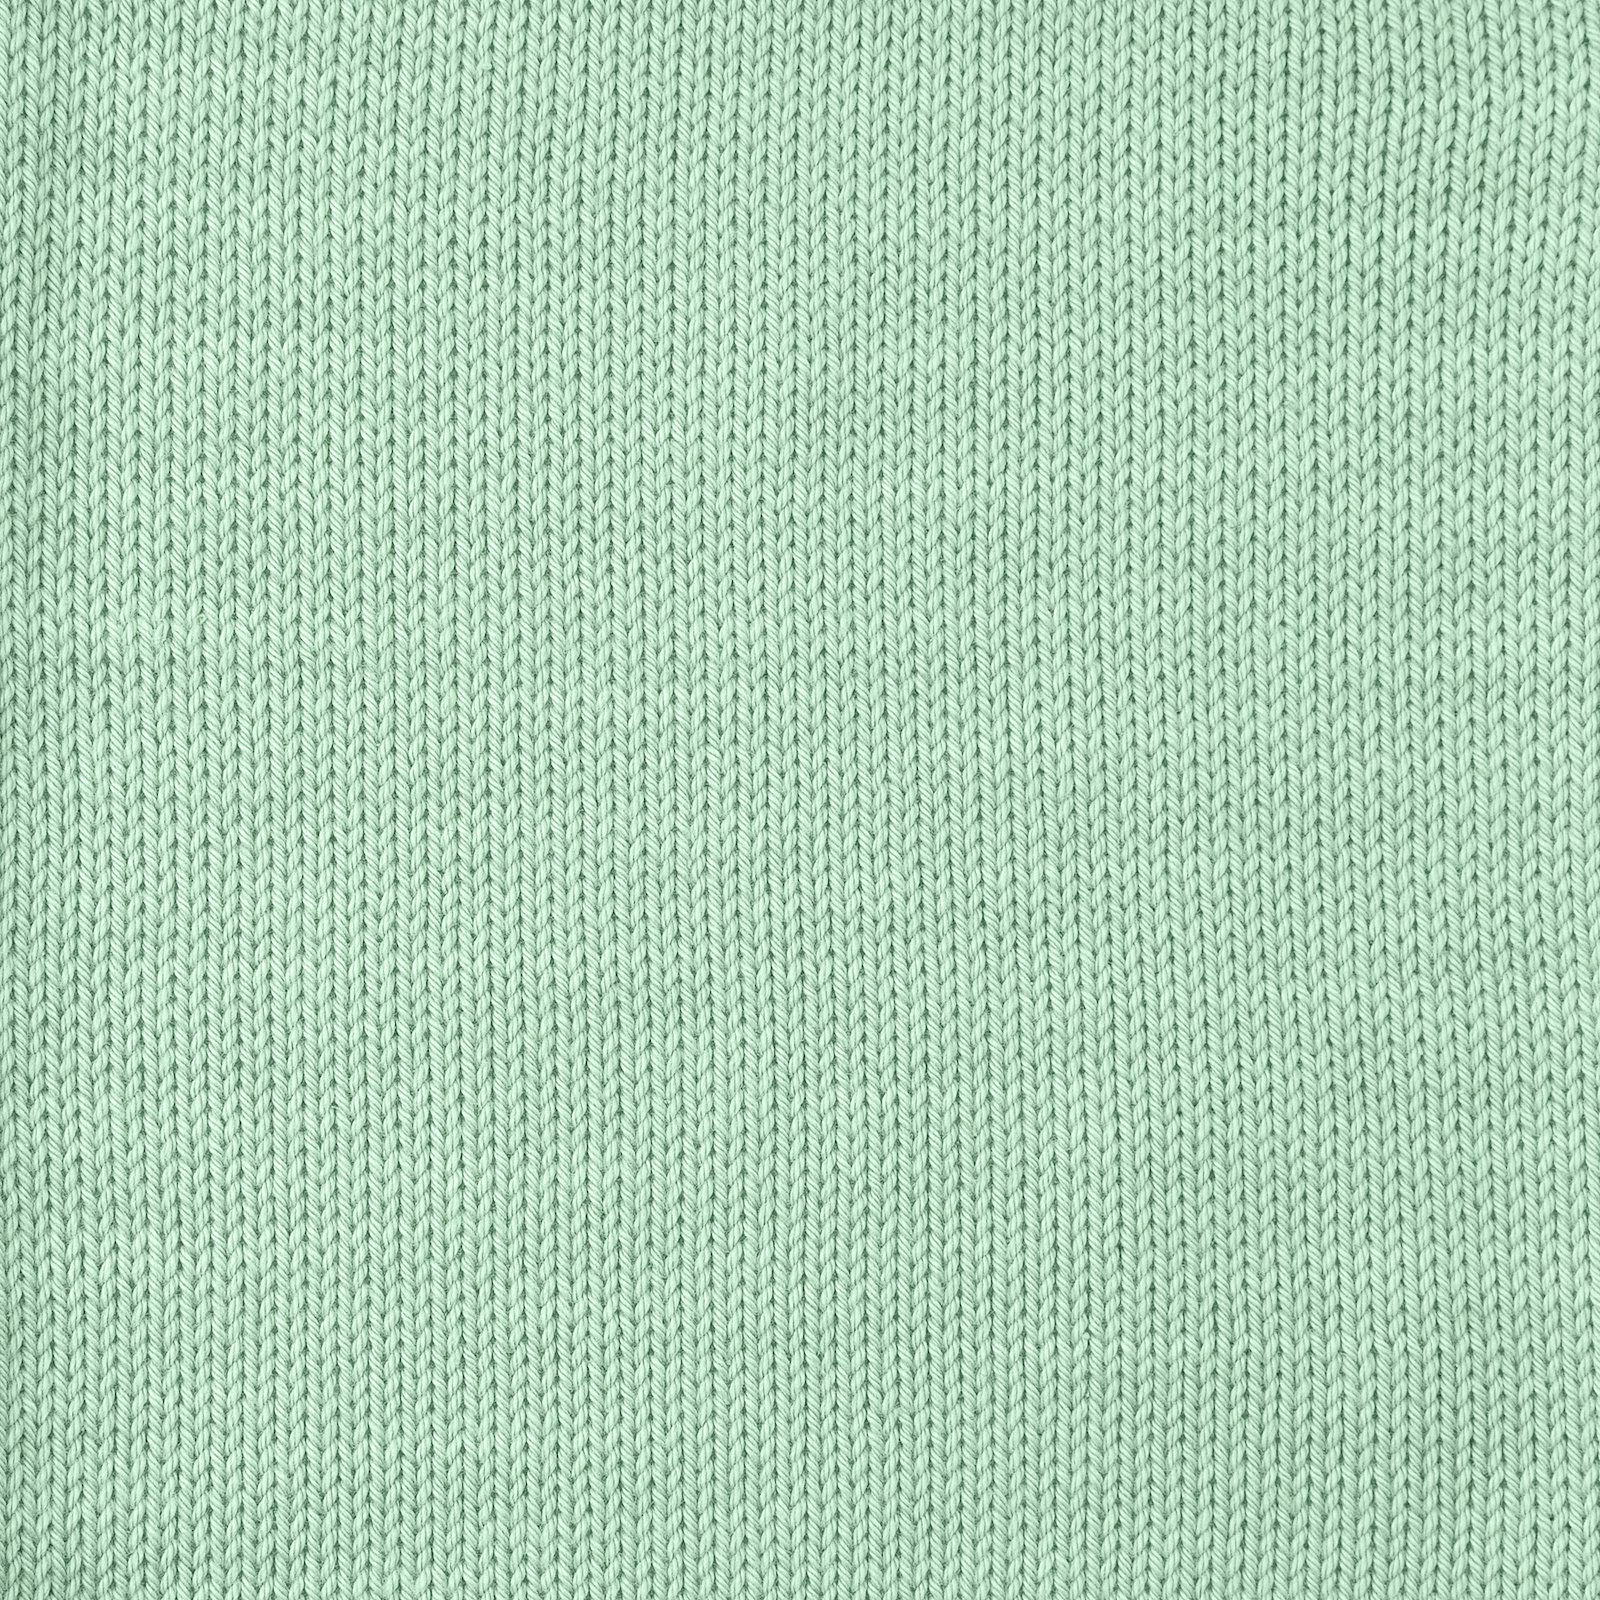 FRAYA, 100% cotton yarn "Colourful", mint 90060092_sskit